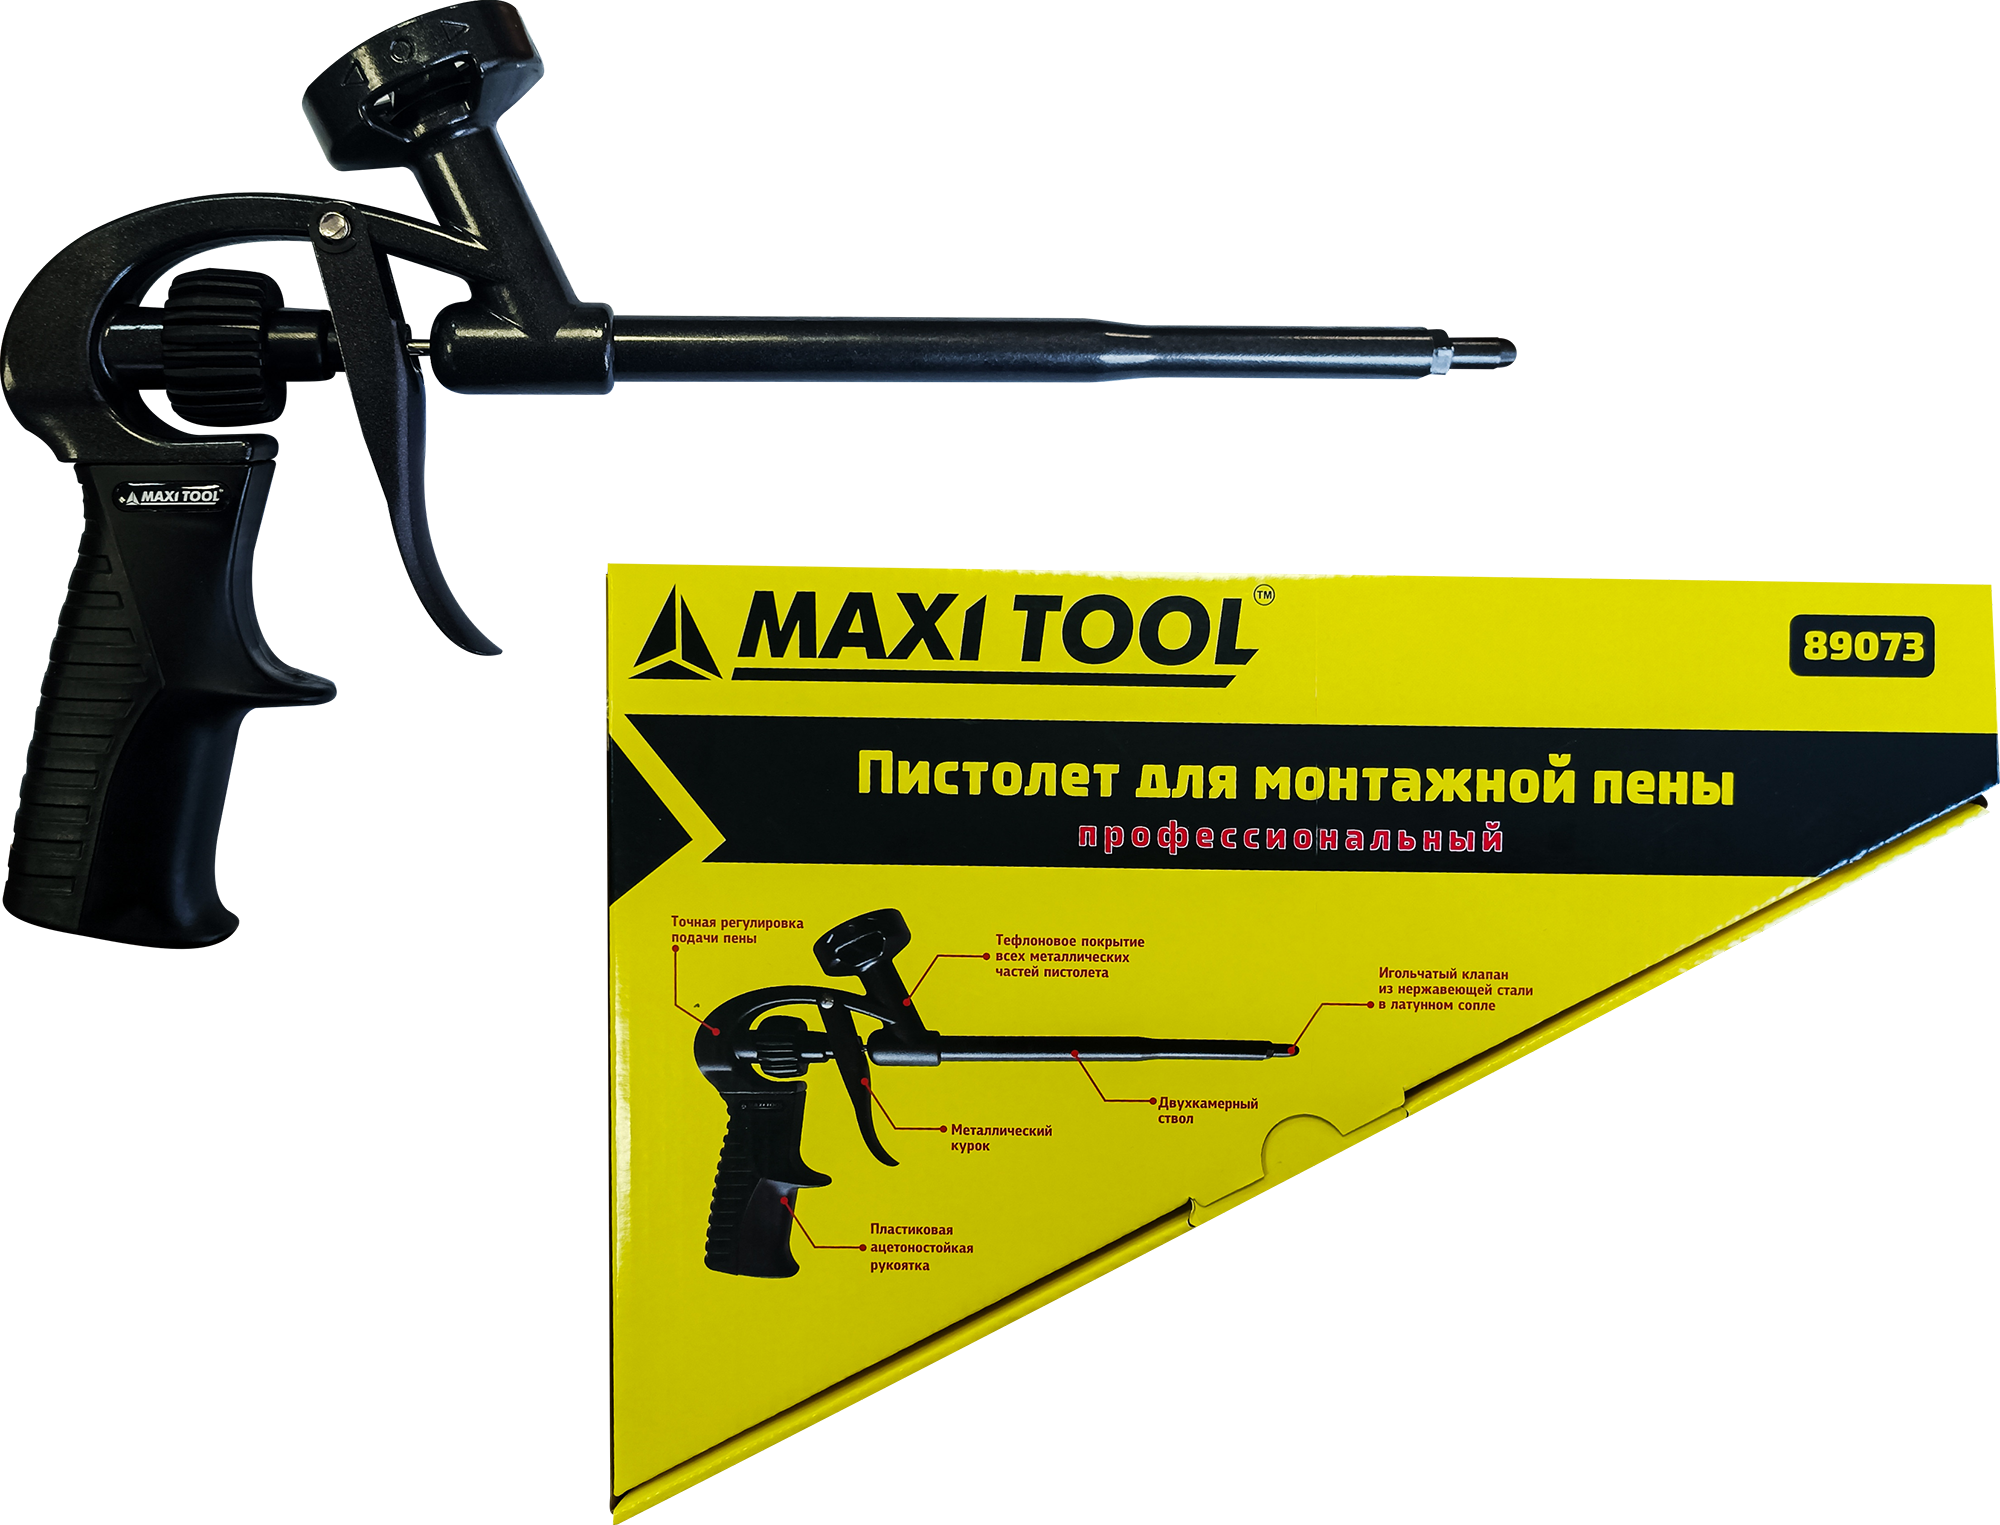 Пистолеты для монтажной пены MaxiTool алюминиевый корпус пластиковая ручка 89073 пистолет для монтажной пены пластмассовый корпус